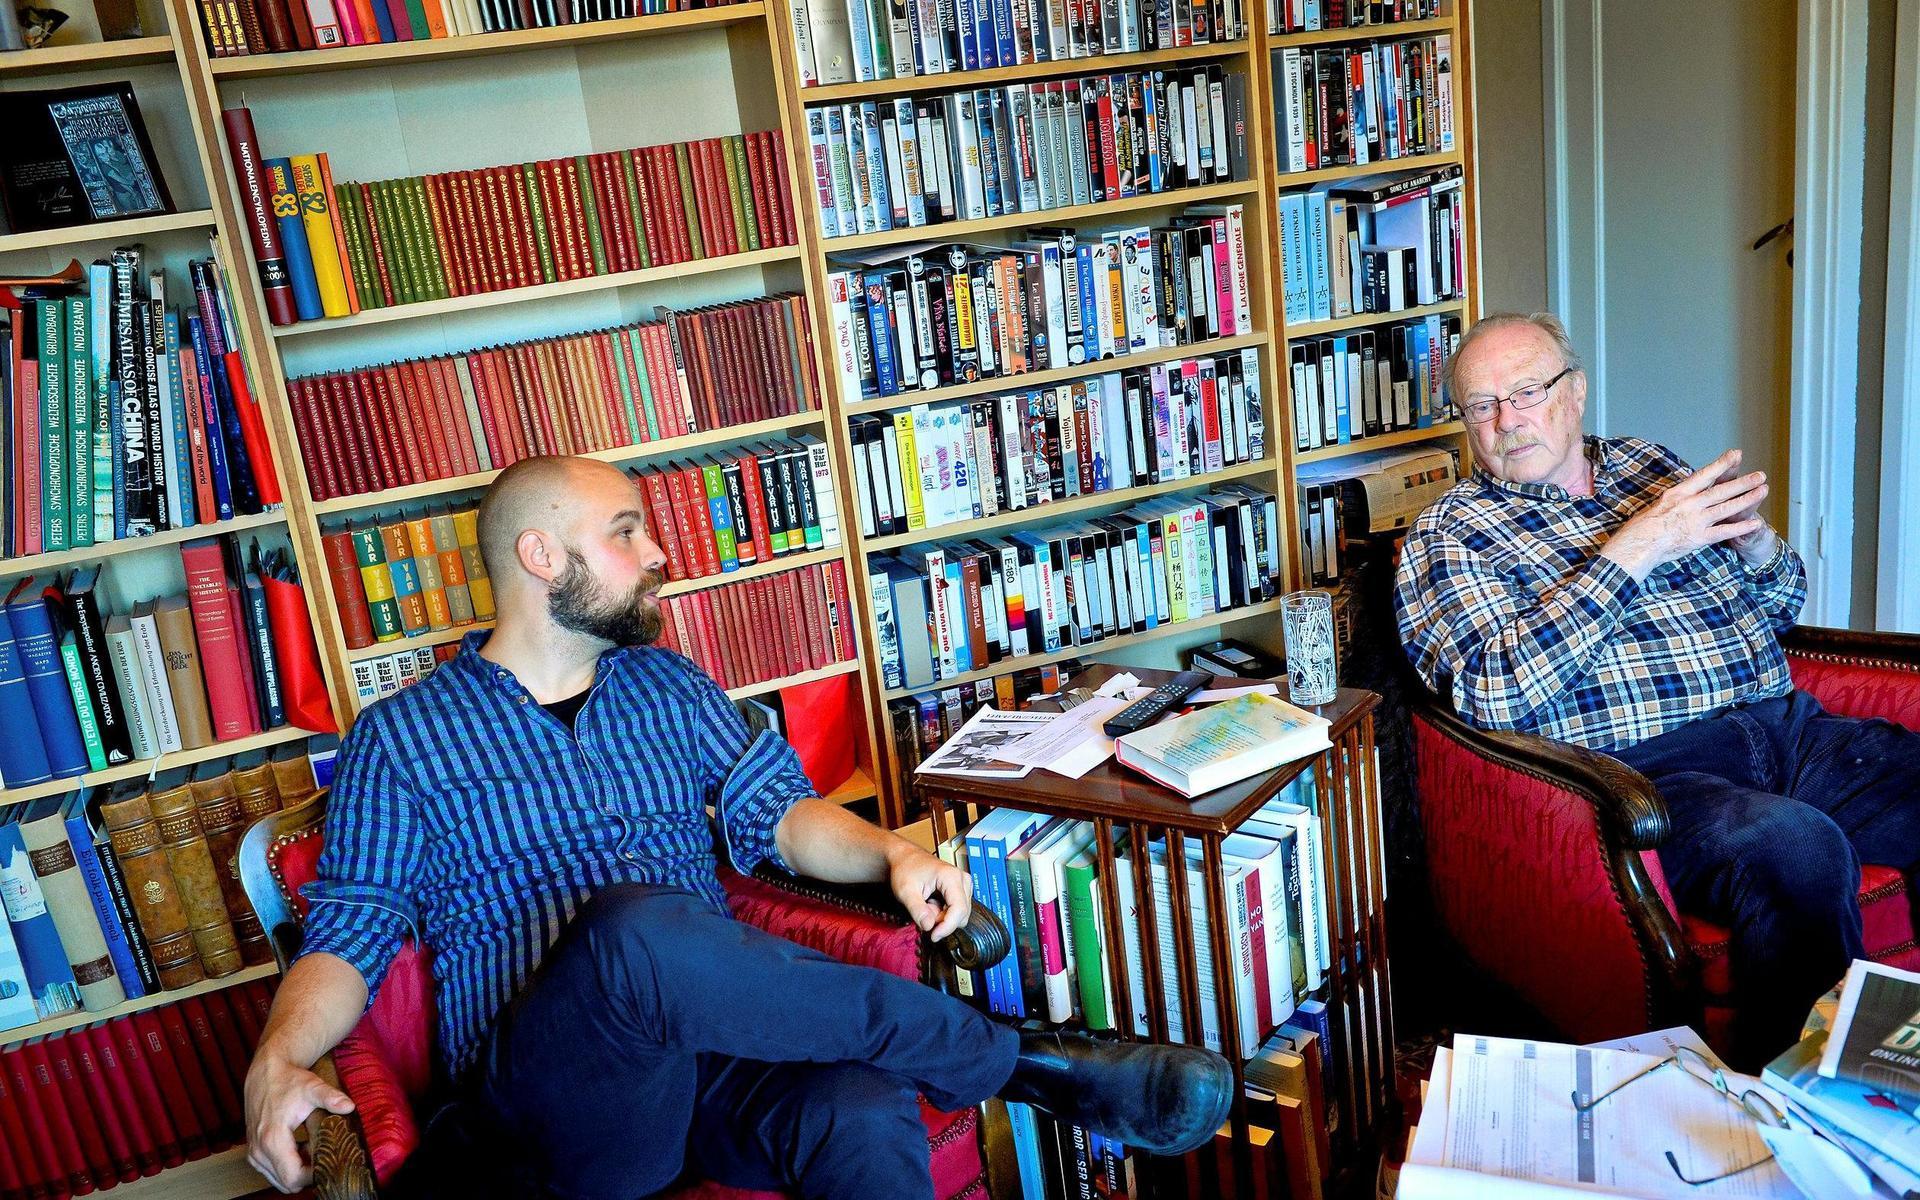 Författaren Daniel Suhonen som skrev boken ”Partiledaren som klev in i kylan – om Juholts fall och den nya politiken”, hälsade på hemma hos Jan Myrdal i oktober 2014.